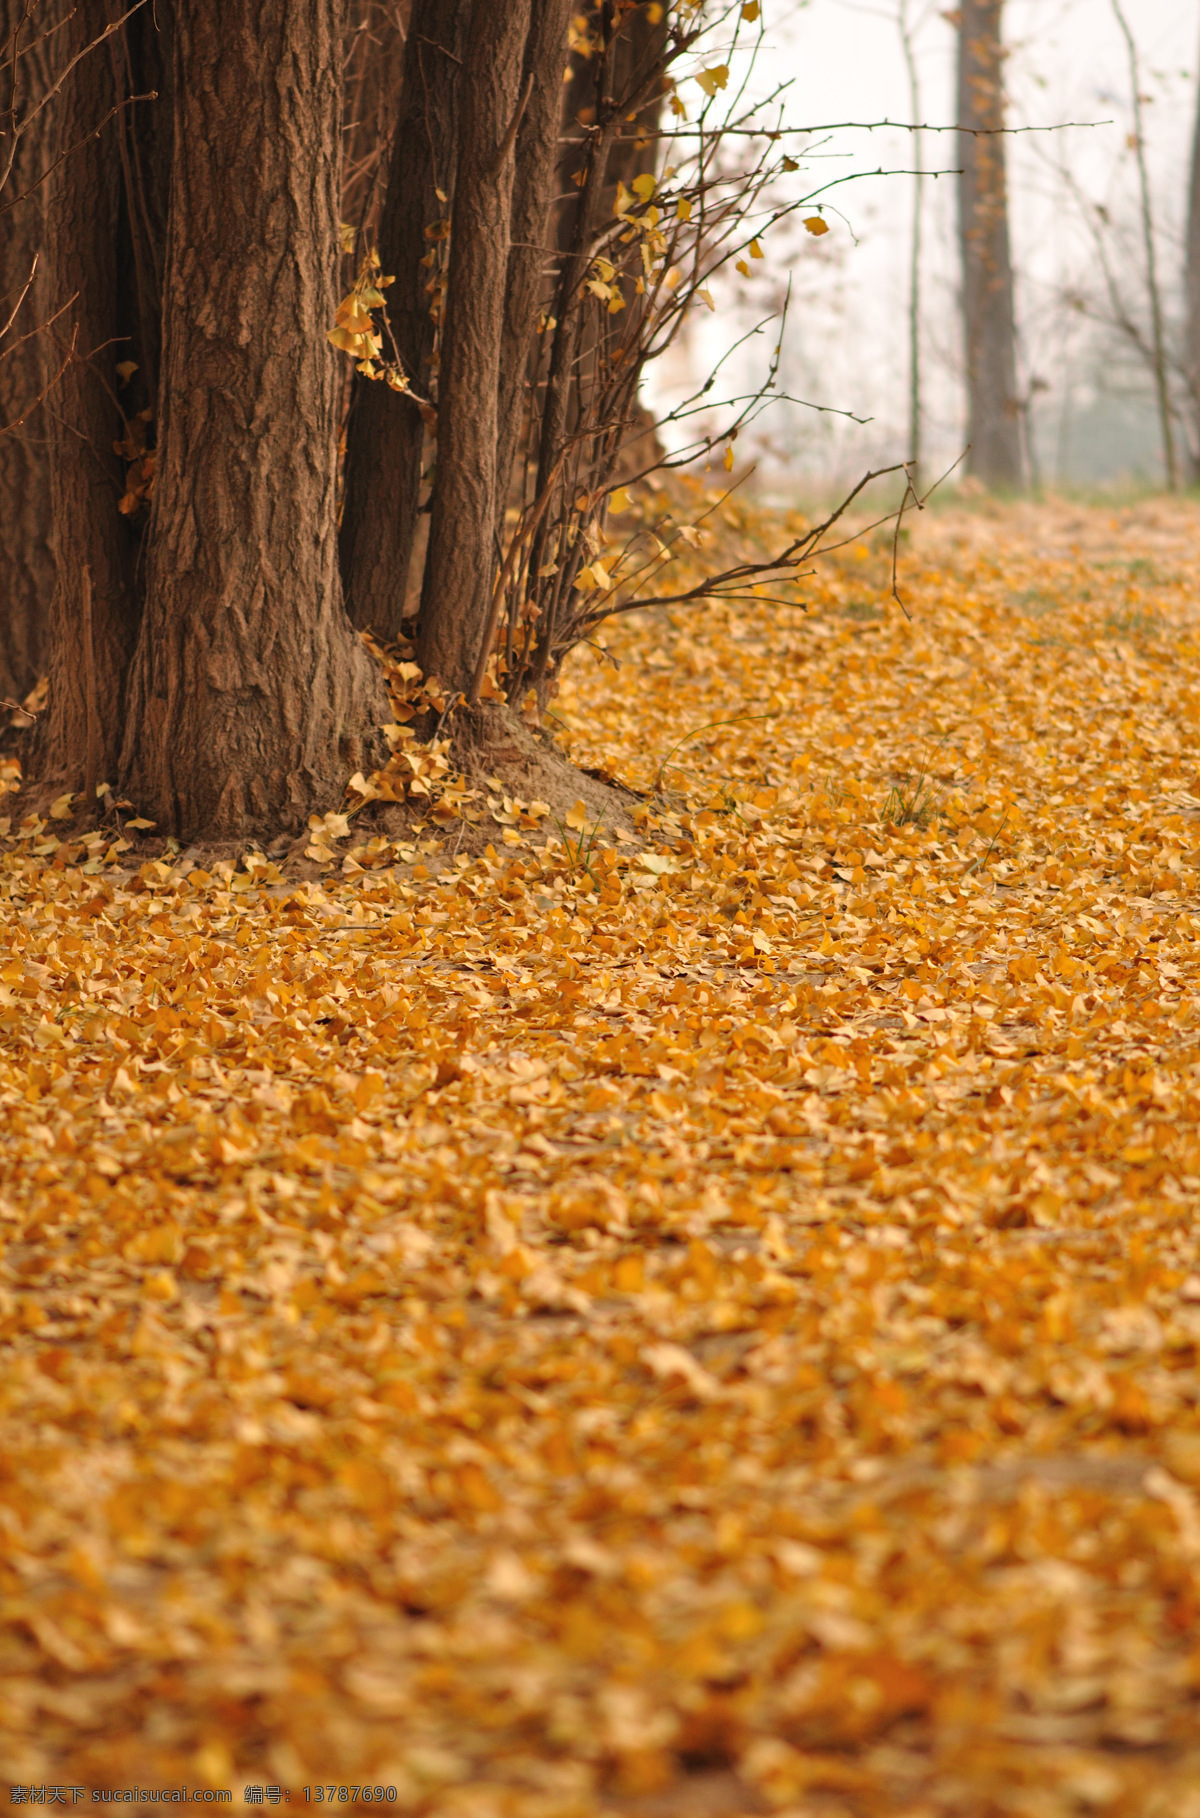 银杏园 银杏树 暖色调 温暖 秋色 秋天 自然风景 自然景观